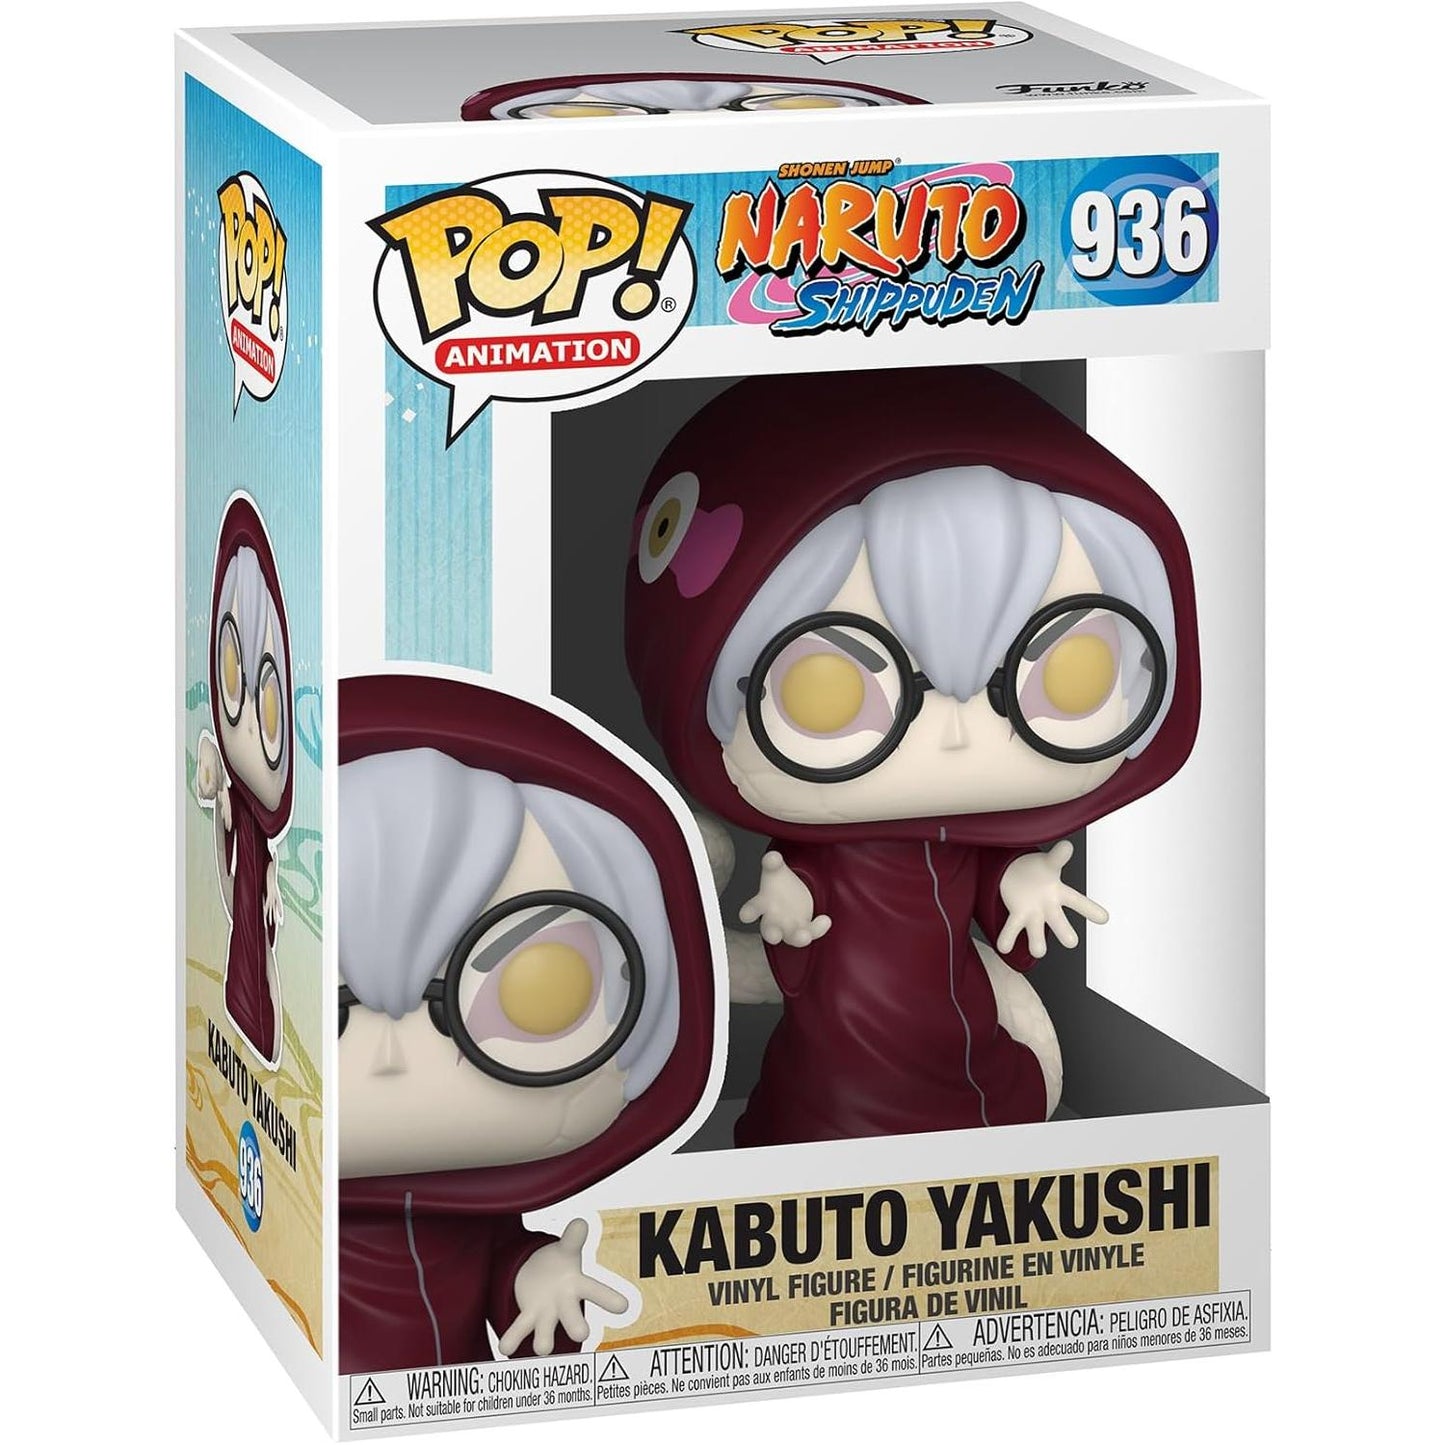 Naruto Shippuden: Kabuto Yakushi 936